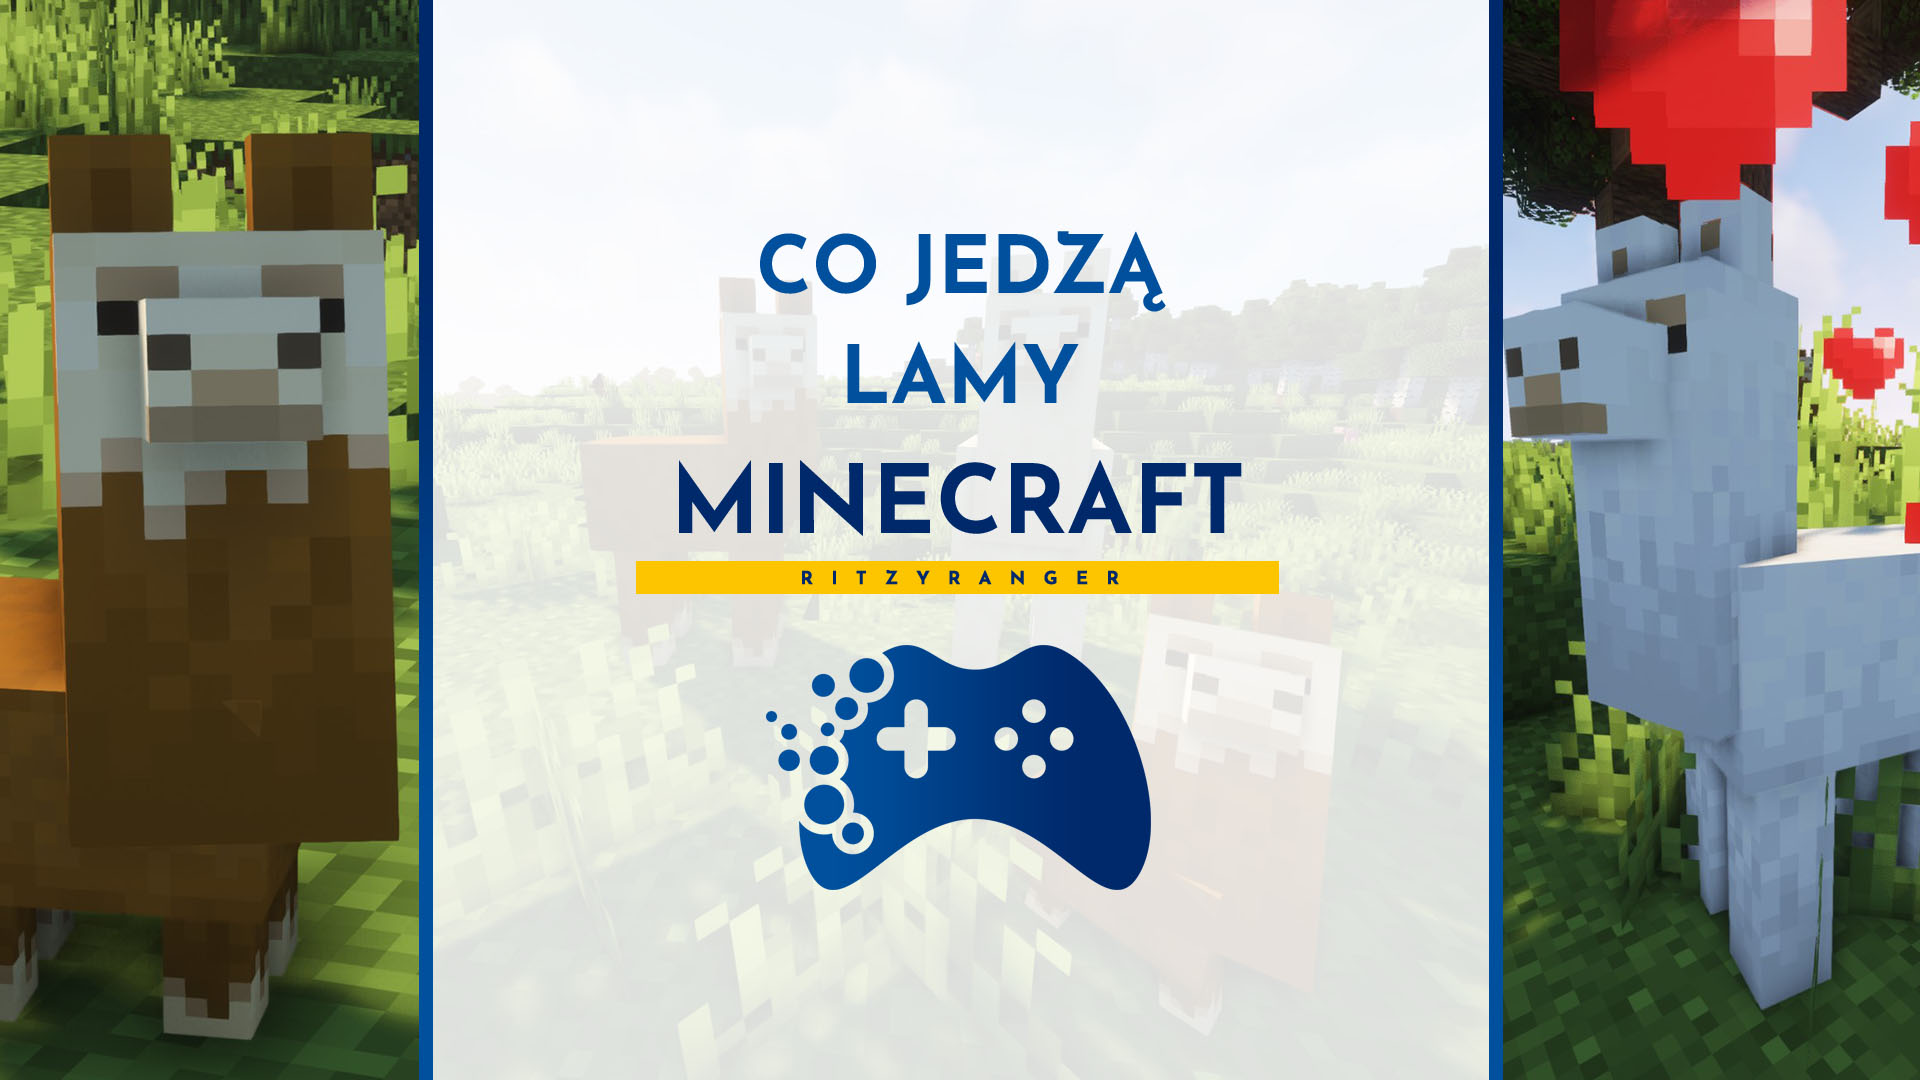 Lamy Minecraft - co jedzą?